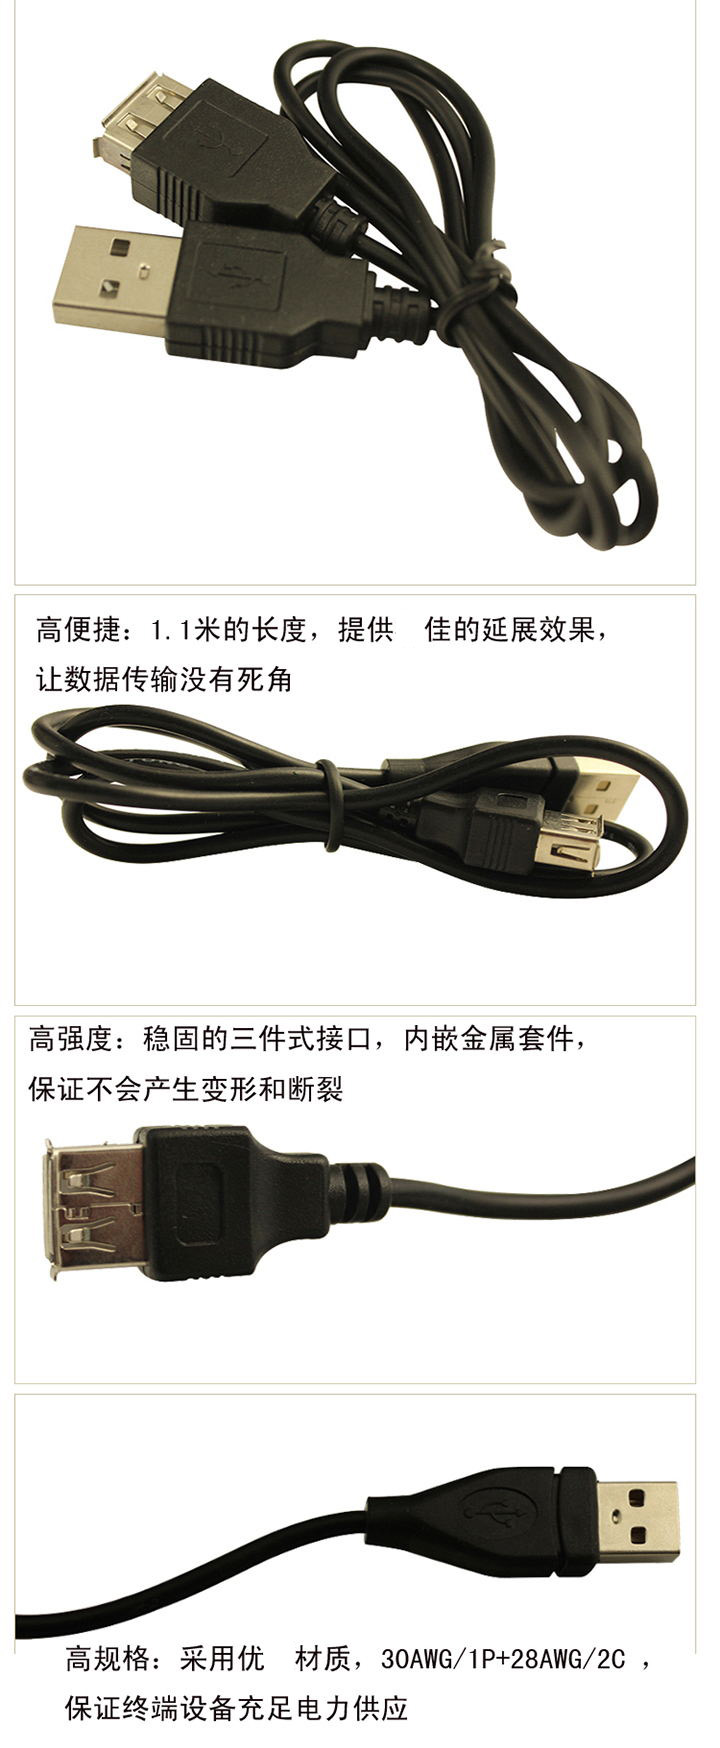 乾甲天  USB延长线 X-001